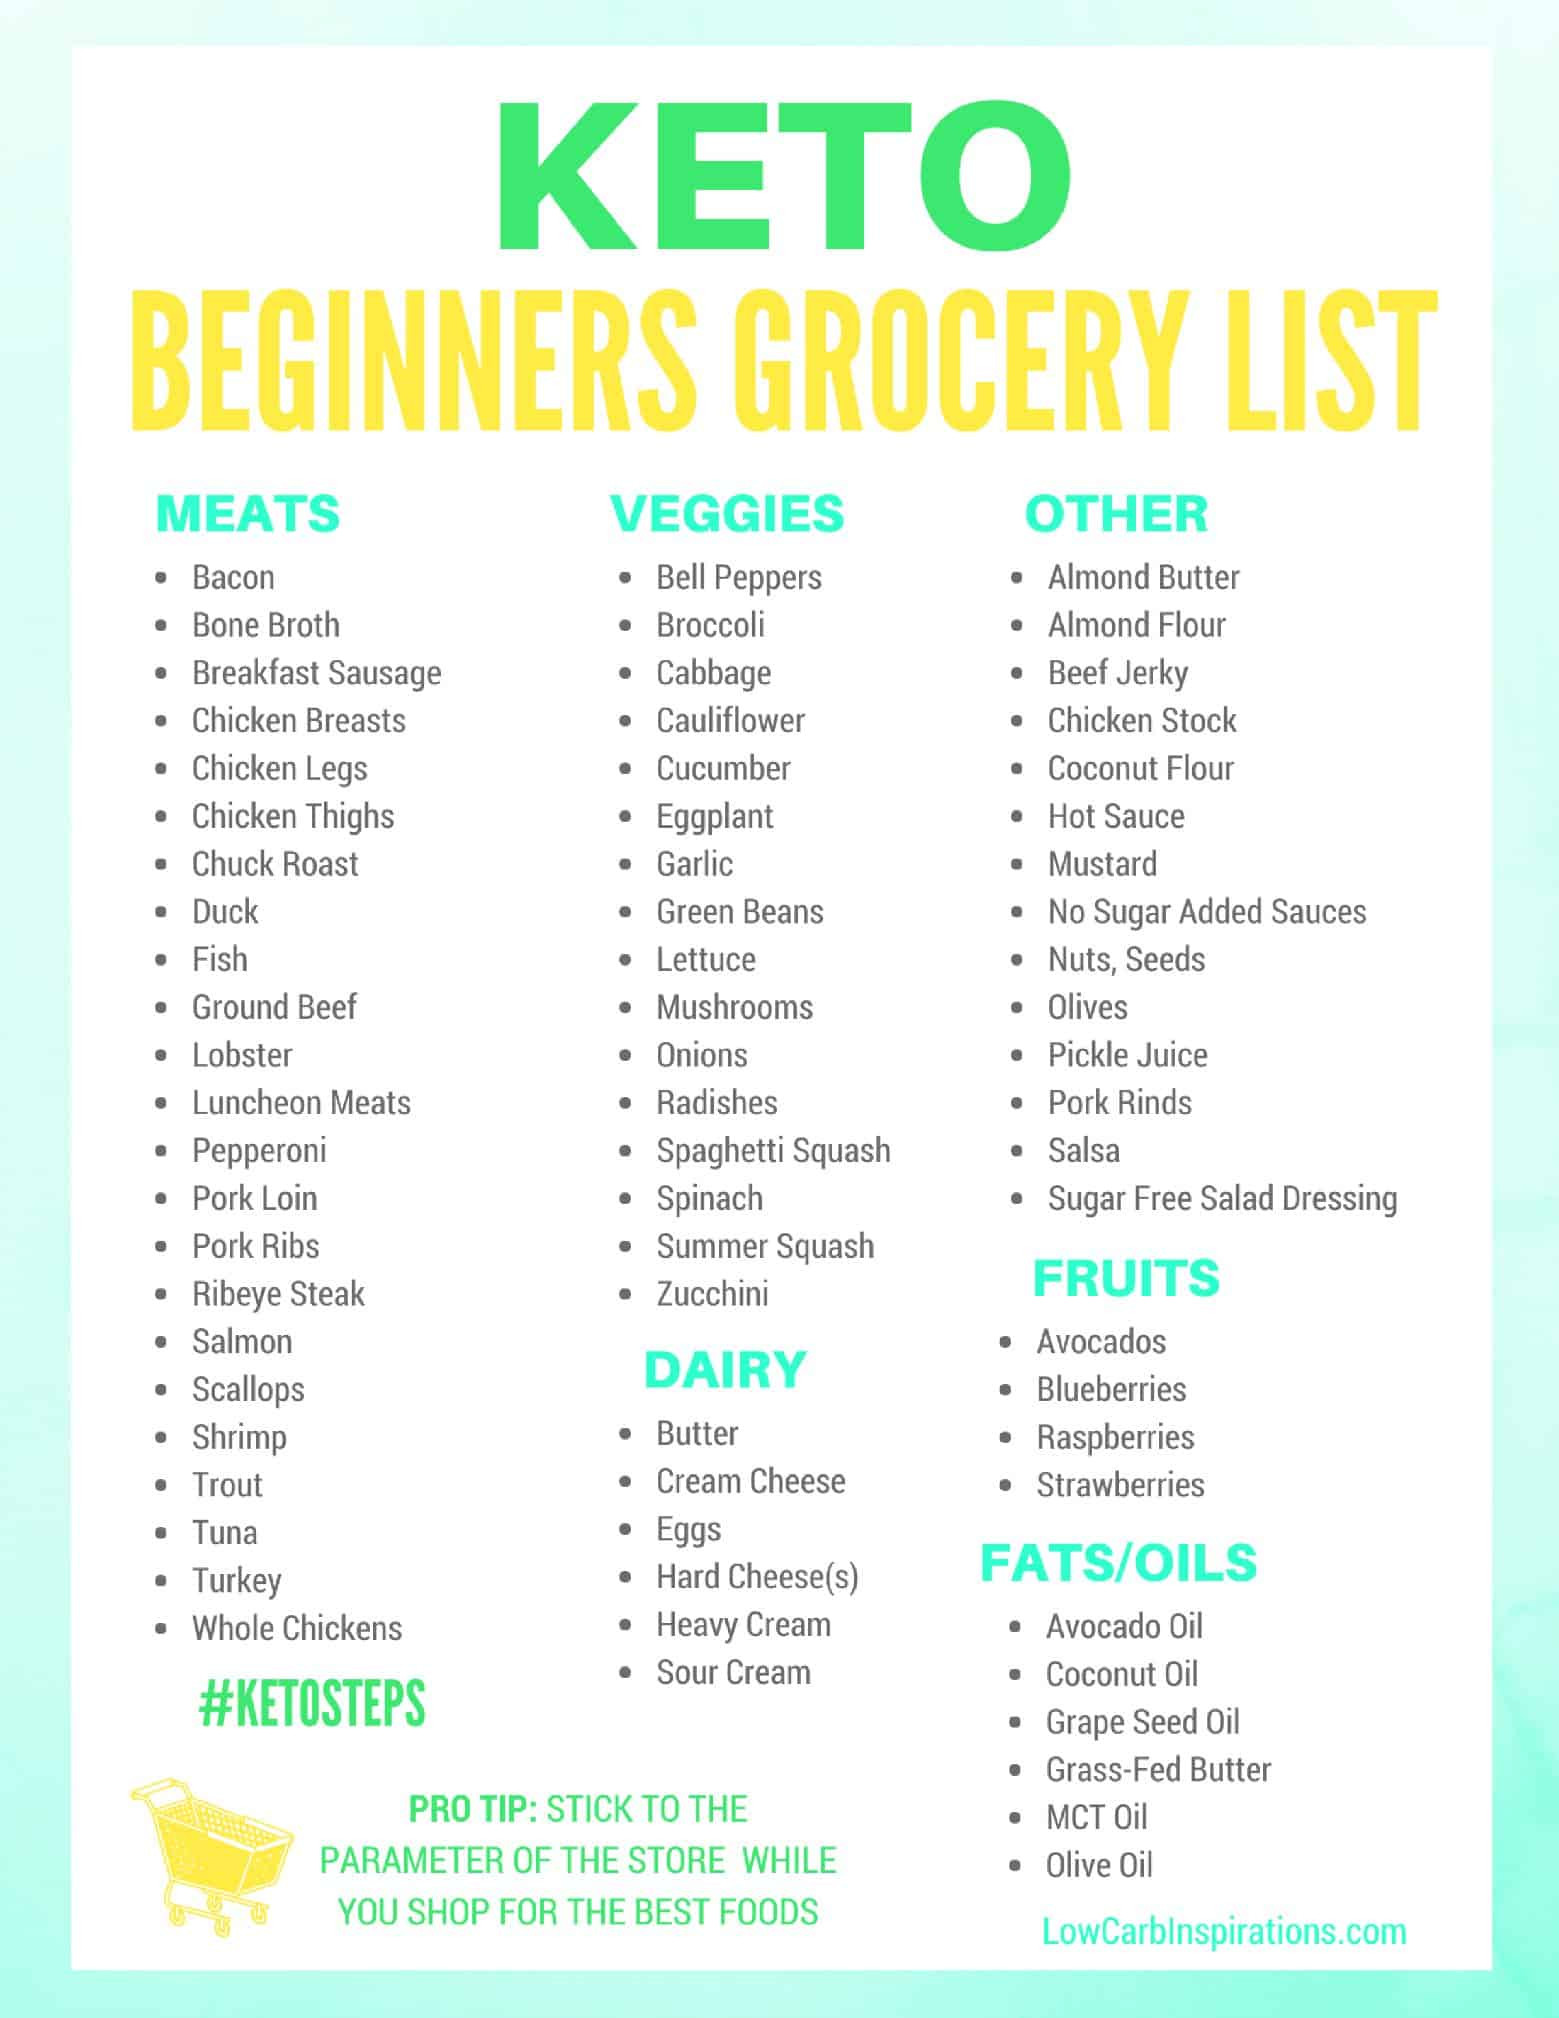 Keto For Beginners Shopping List Keto Grocery List for Beginners iSaveA2Z